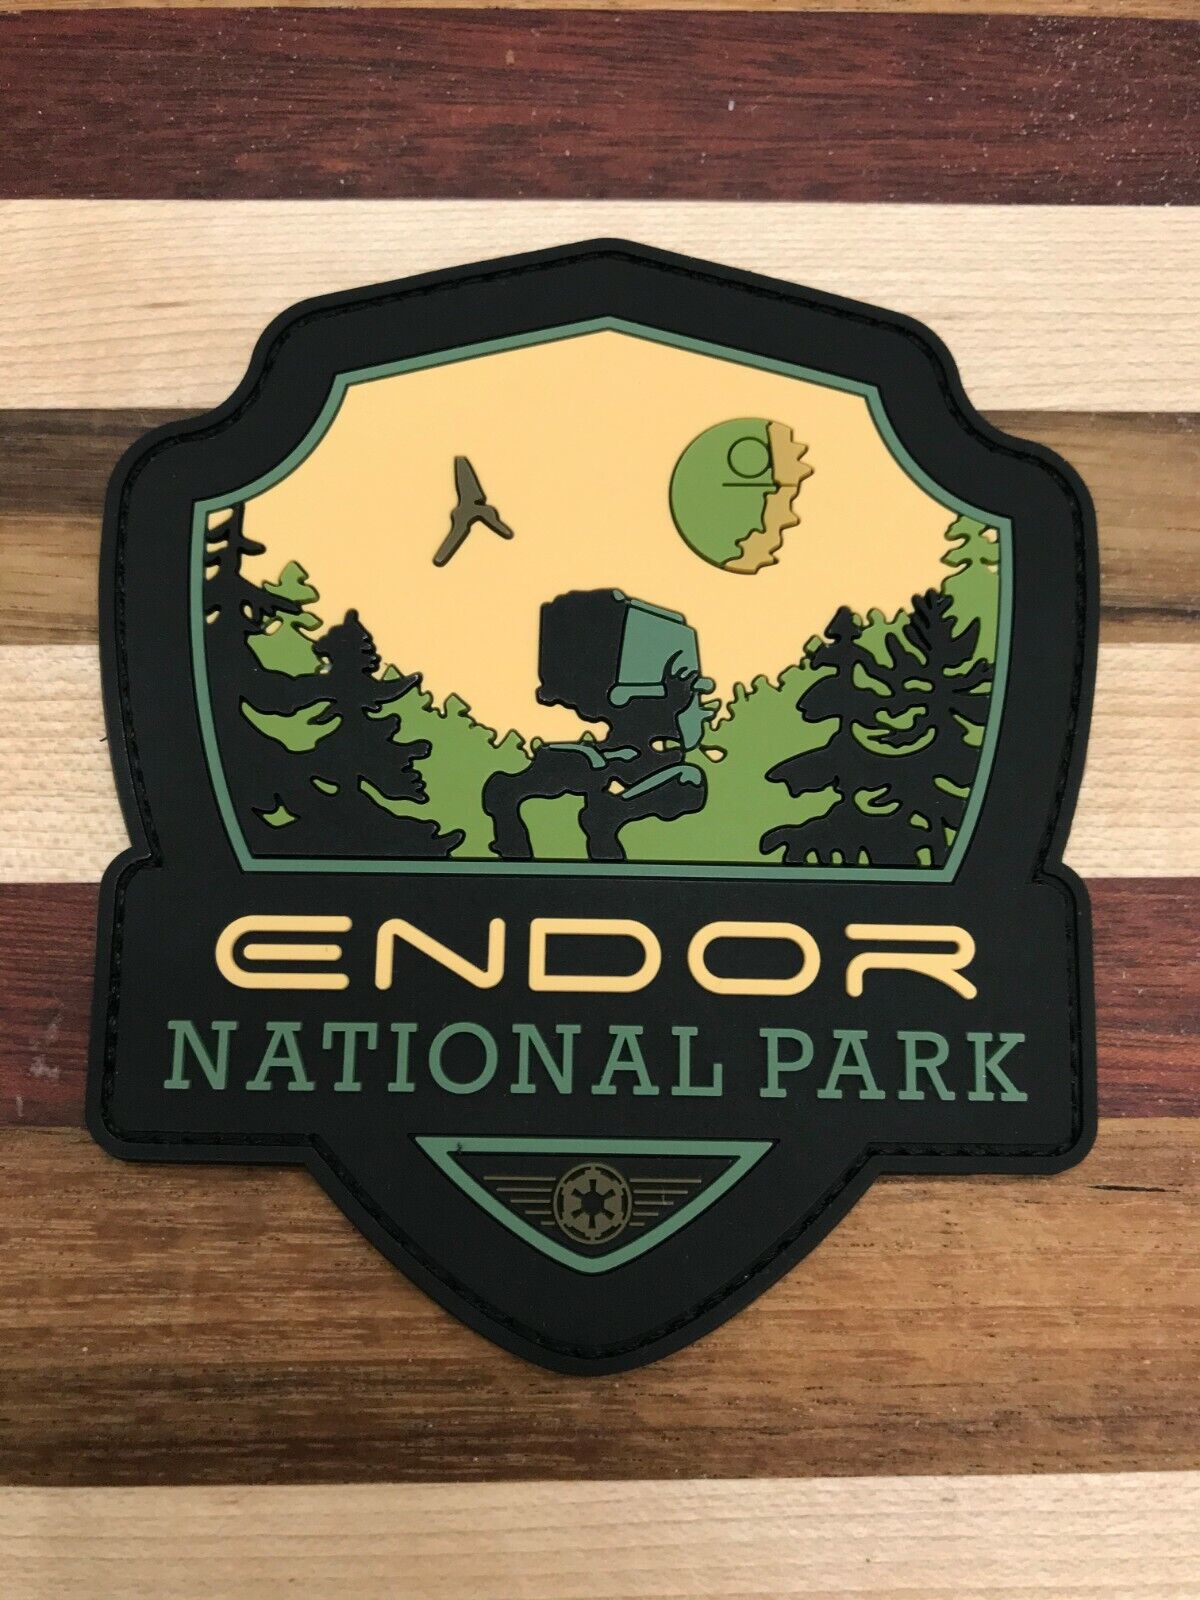 Star Wars, Endor National Park Patch, 3D PVC Rubber